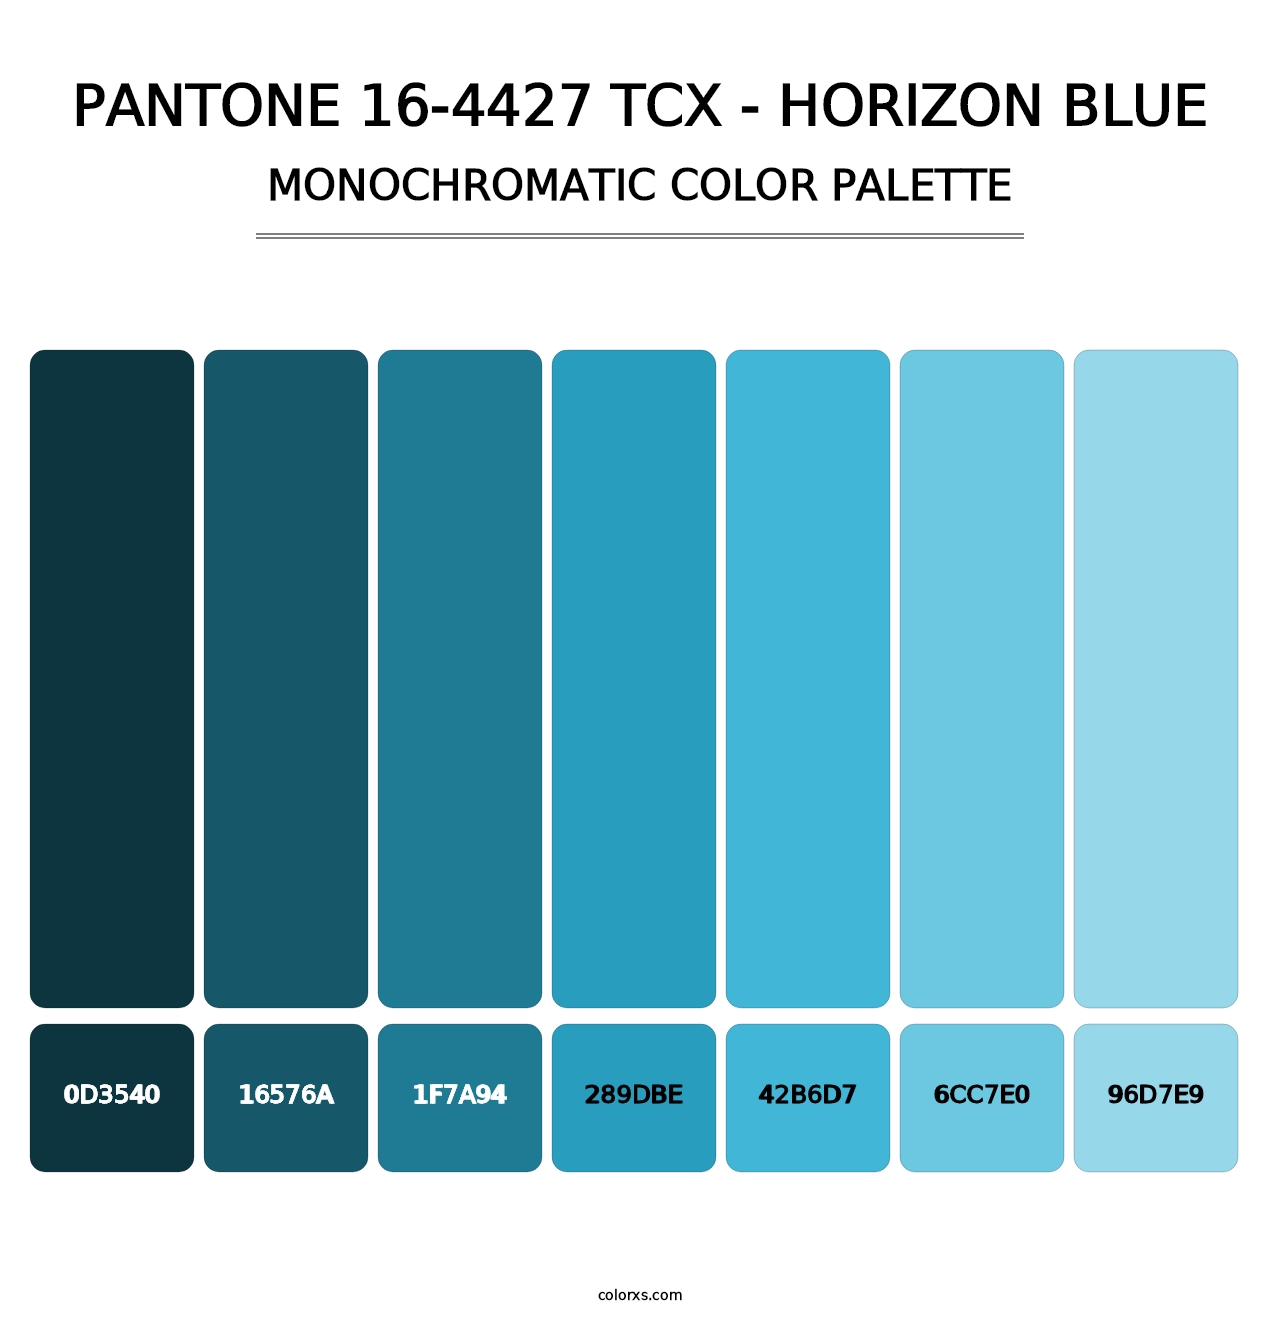 PANTONE 16-4427 TCX - Horizon Blue - Monochromatic Color Palette